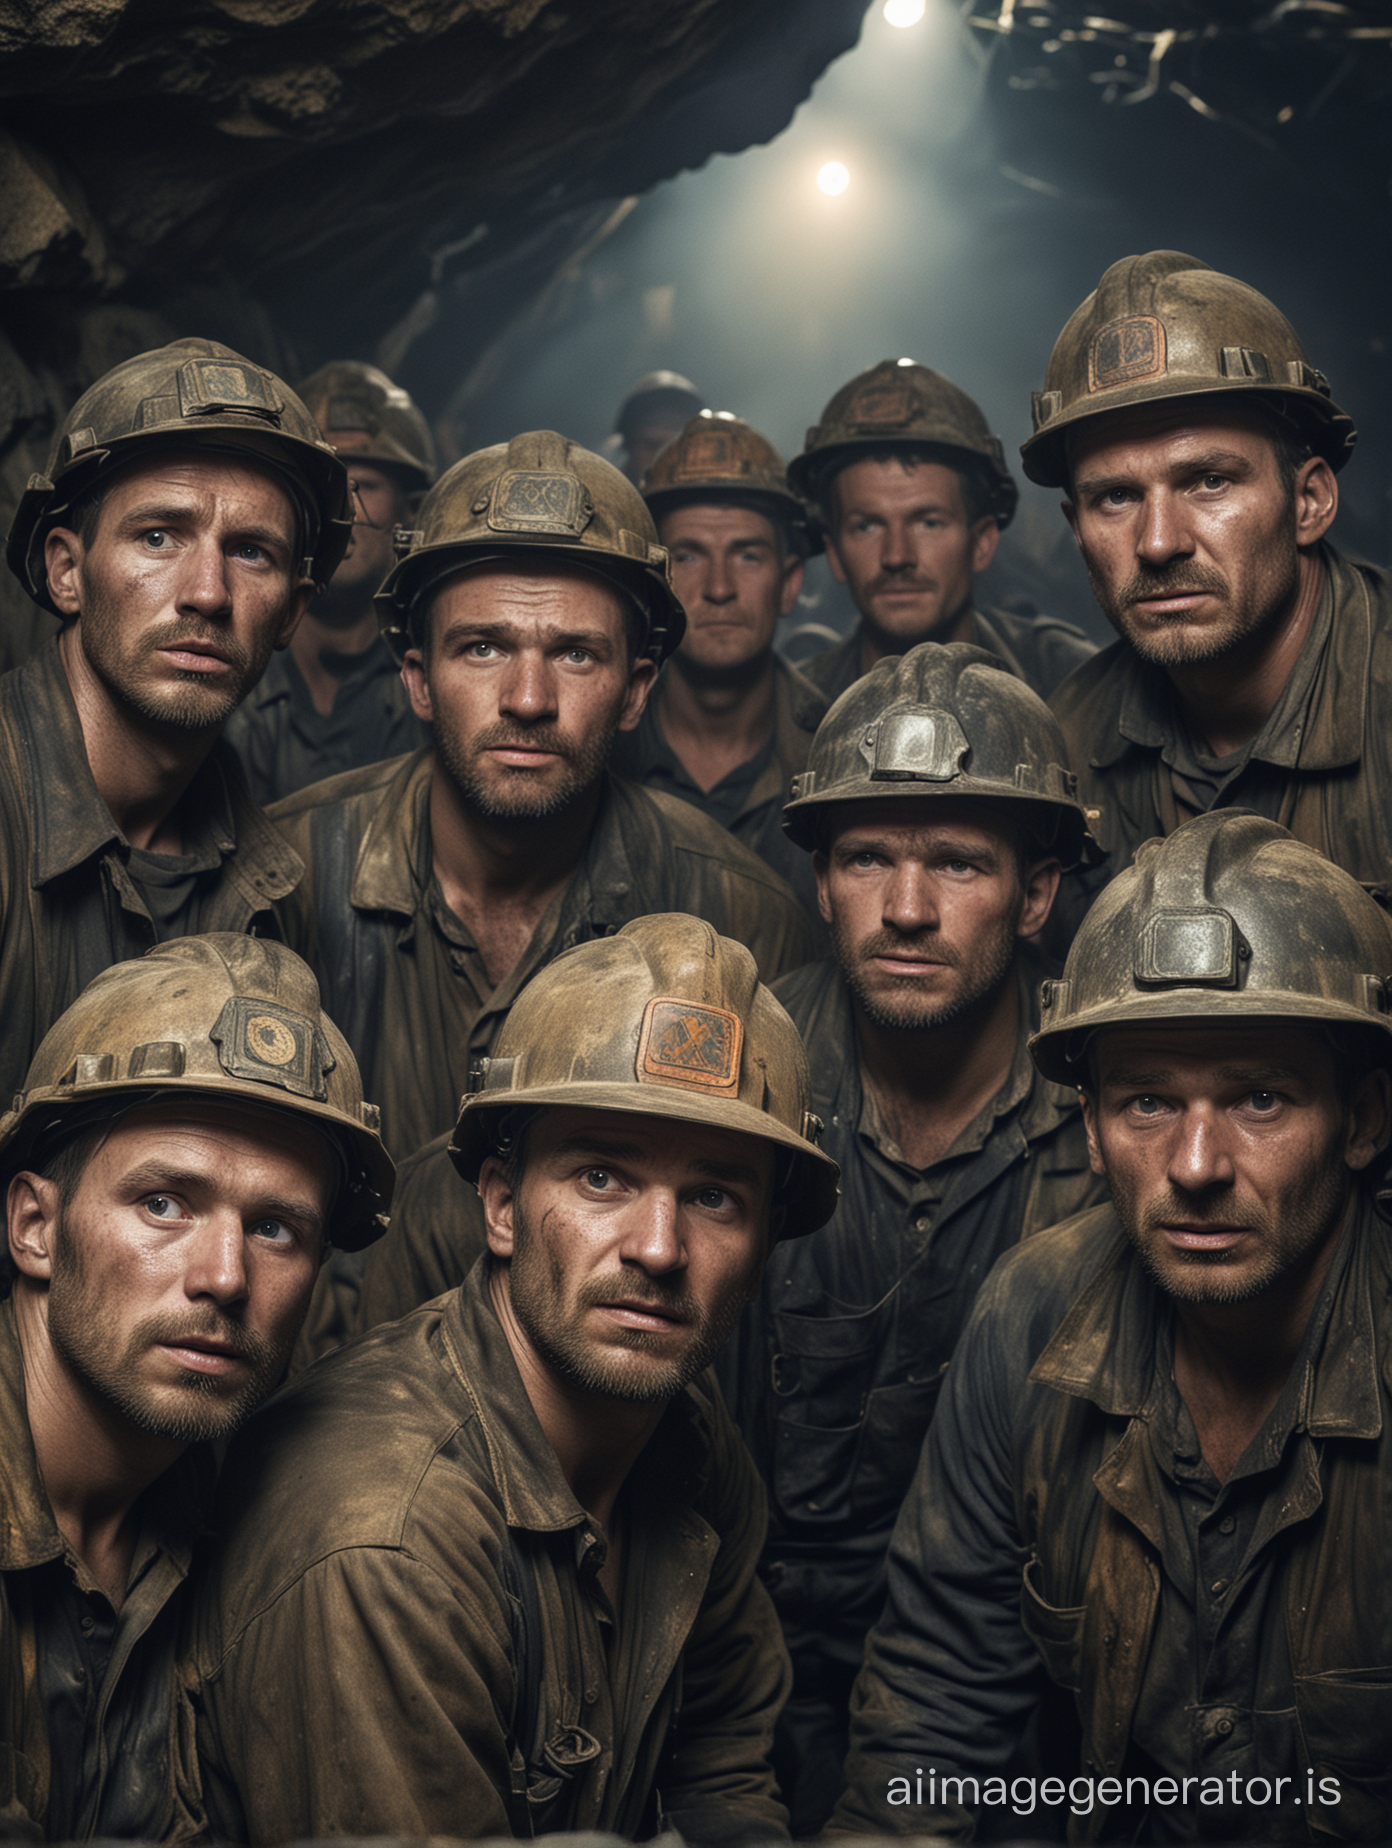 un groupe de mineurs polonais travaillant durement dans une mine souterraine, fatigue, visages sales